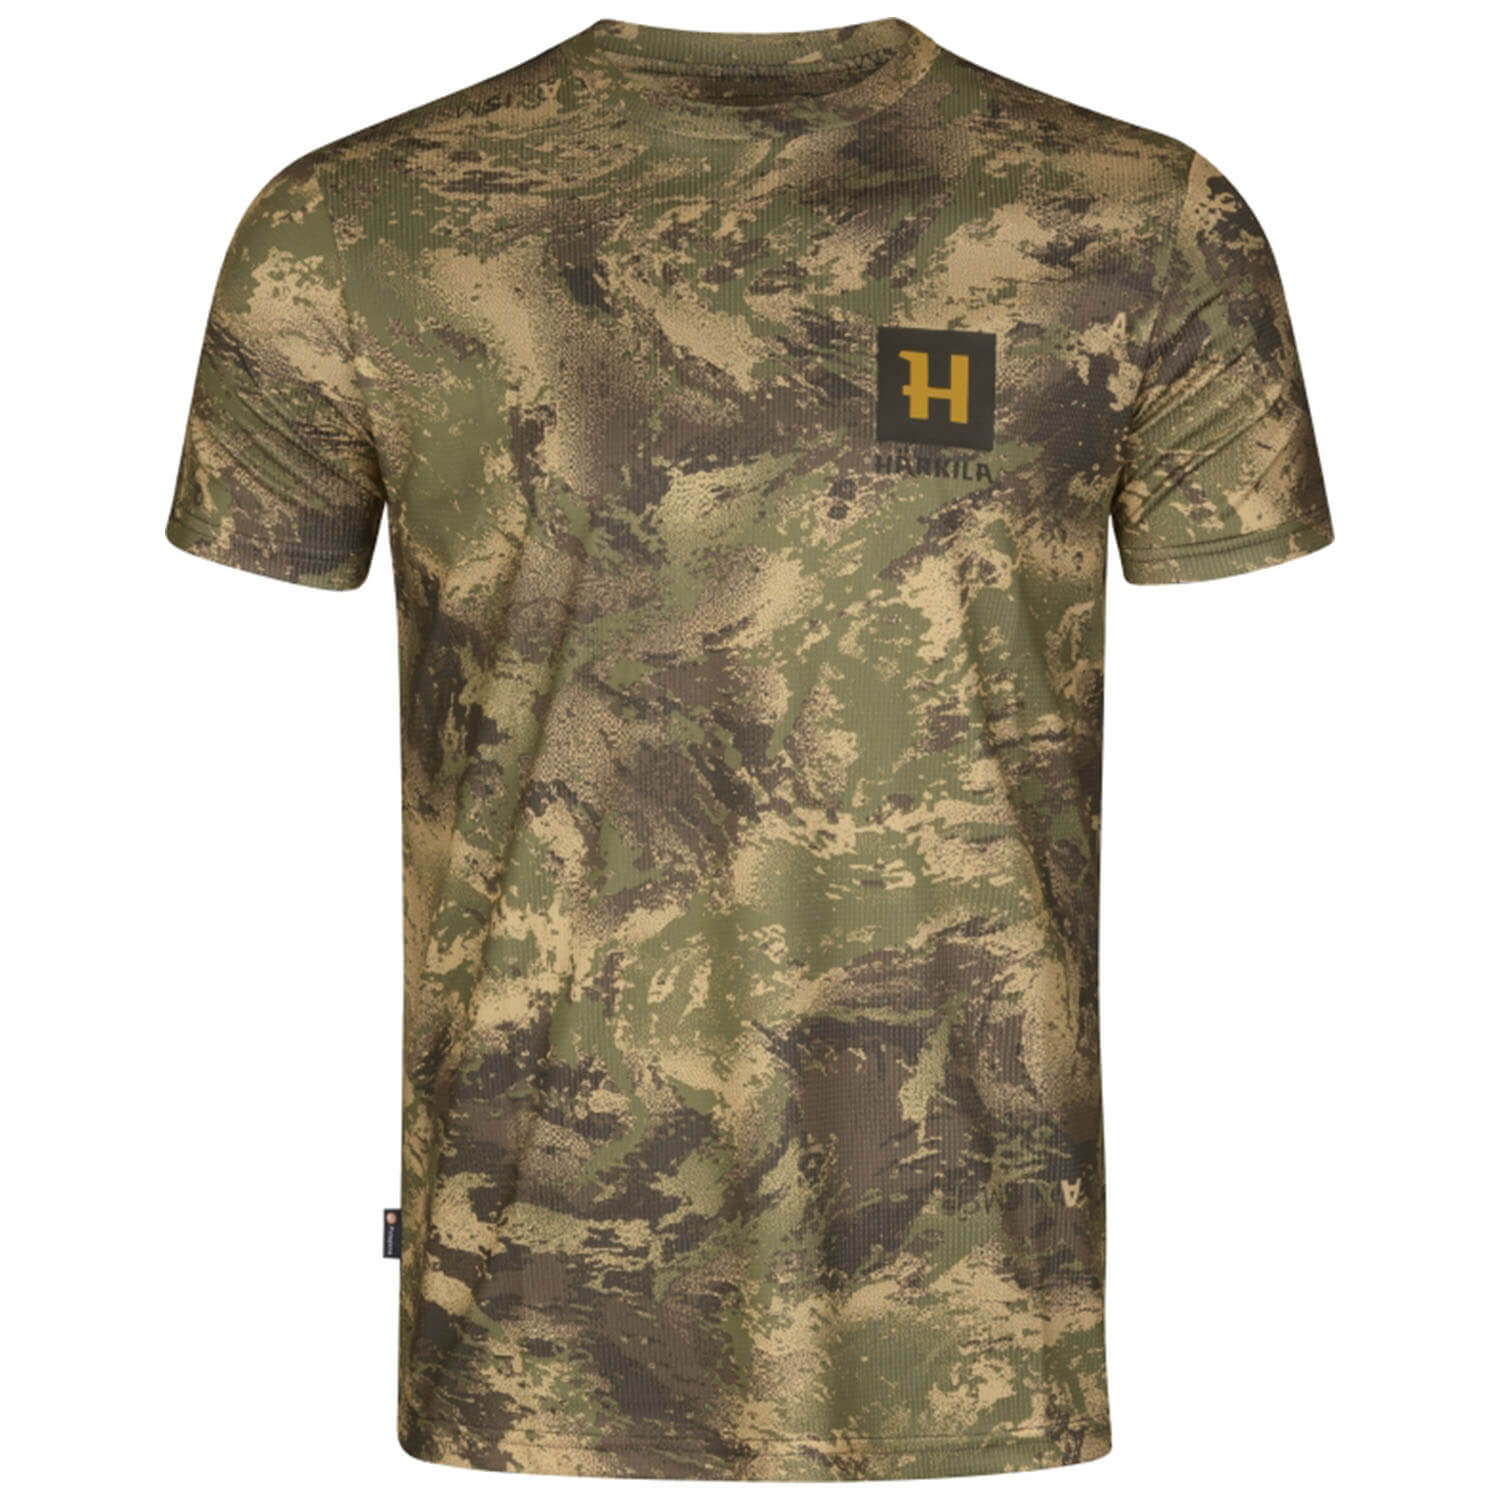  Härkila T-shirt Deer Stalker (AXIS MSP) - Camouflageshirts